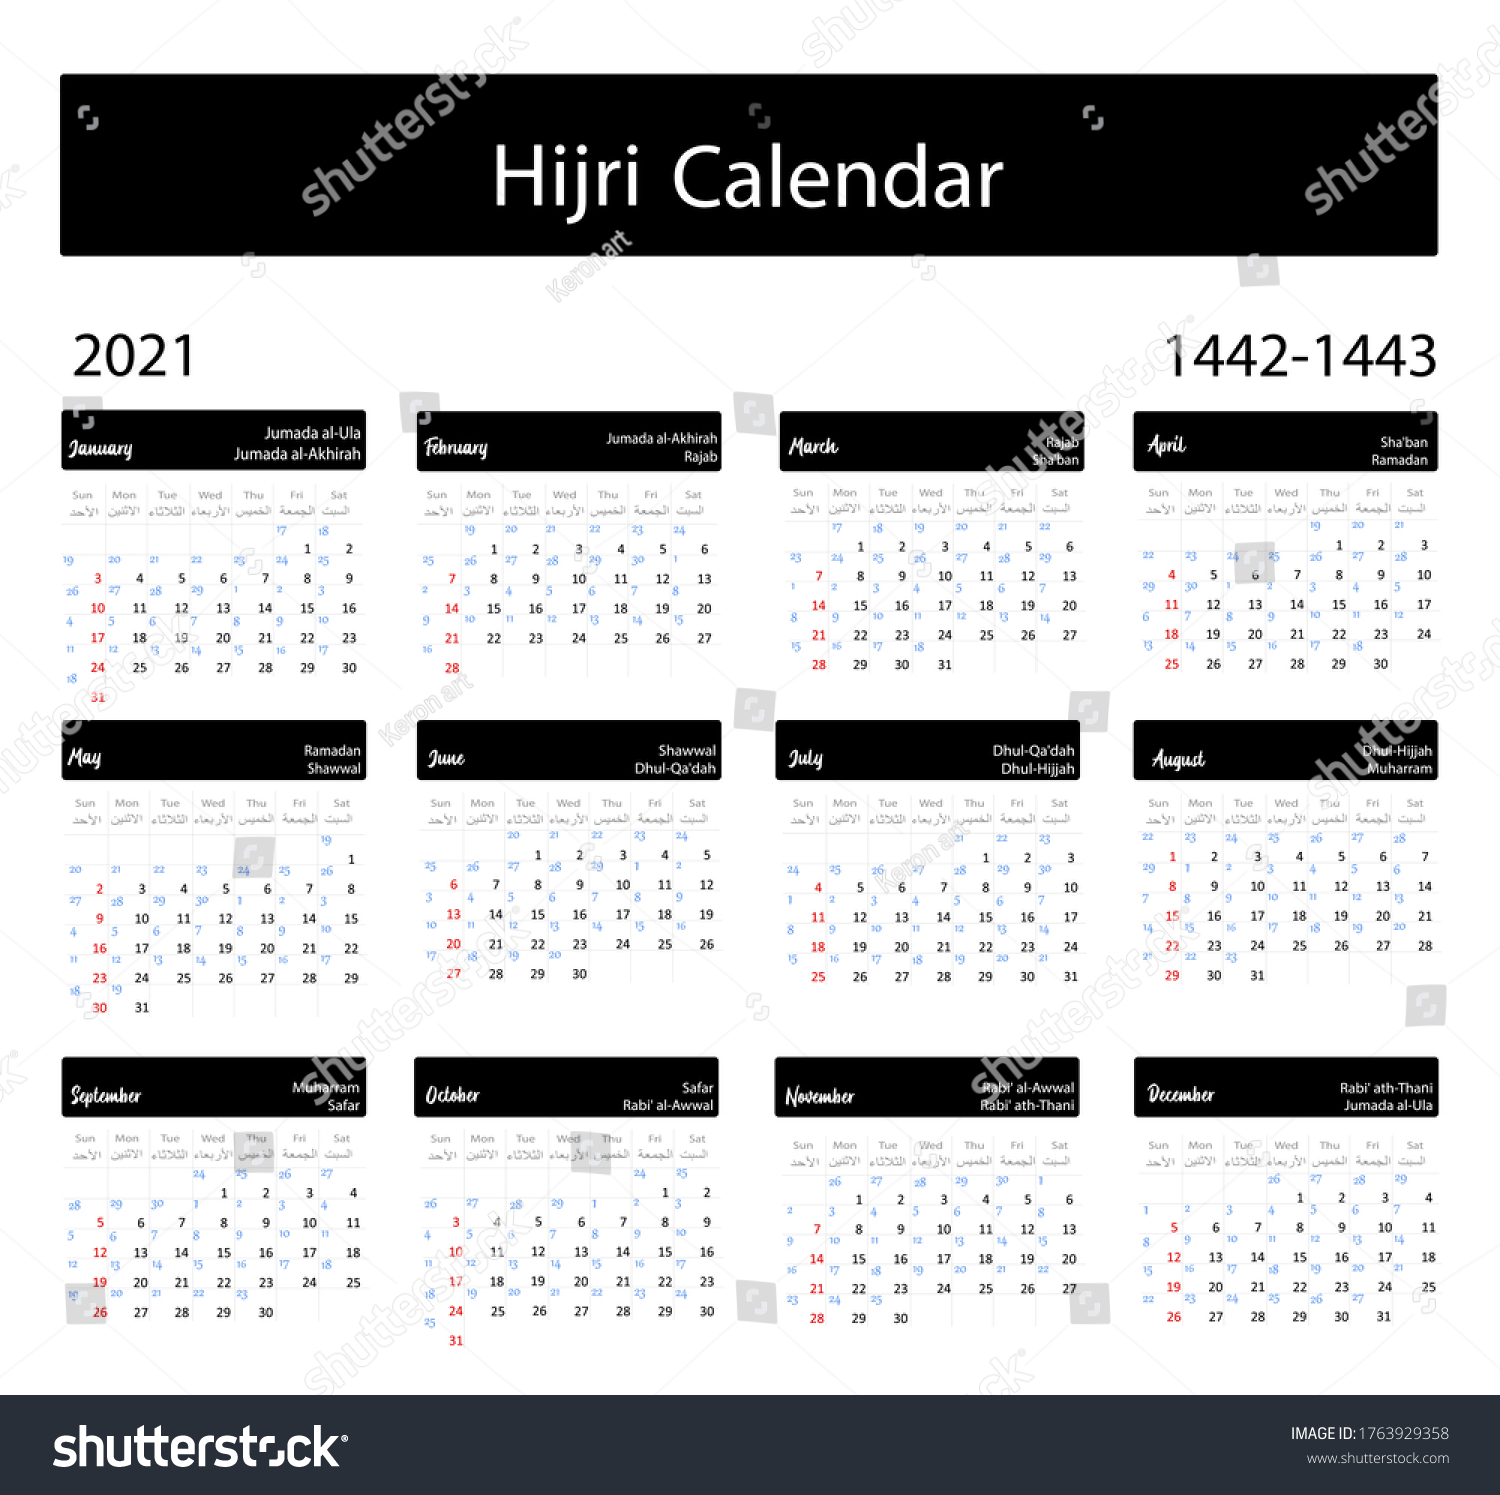 Calendar today hijri Islamic calendar